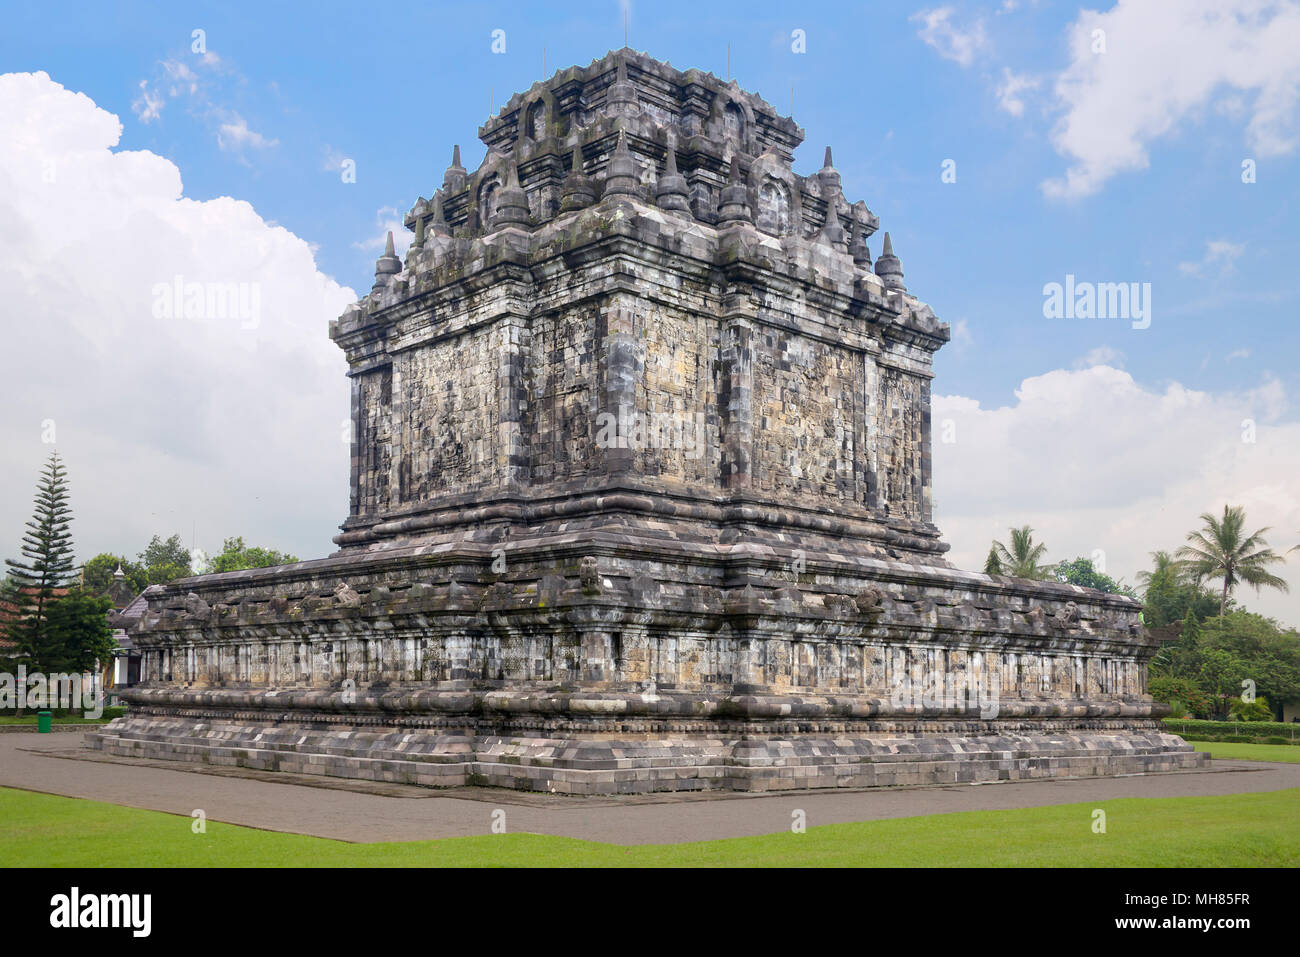 Candi Mendiut Tempel 9. Jahrhundert in der Nähe von Borabadur Central Java Indonesien Stockfoto